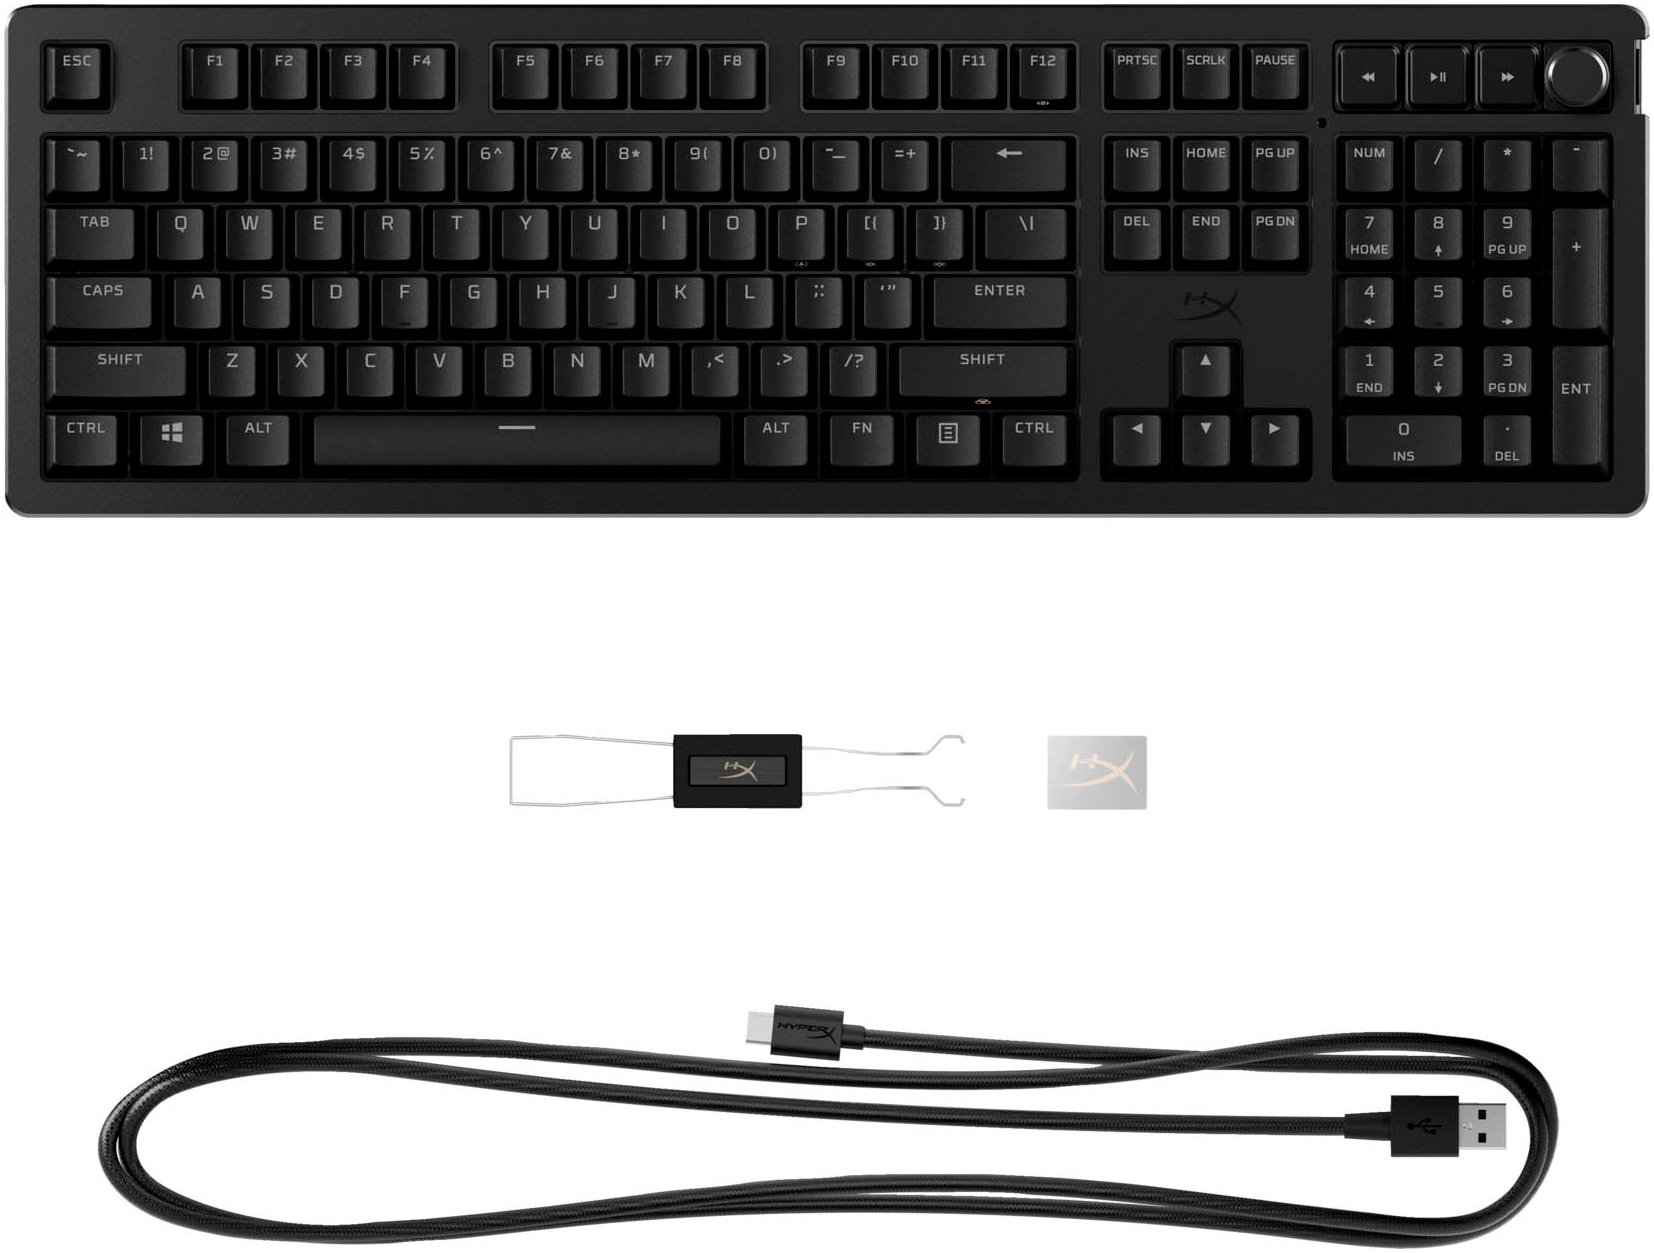 HyperX Gaming-Tastatur »Alloy Rise«, (Ziffernblock-Fn-Tasten-Profil-Speicher-Gaming-Modus-verstellbare Füße)